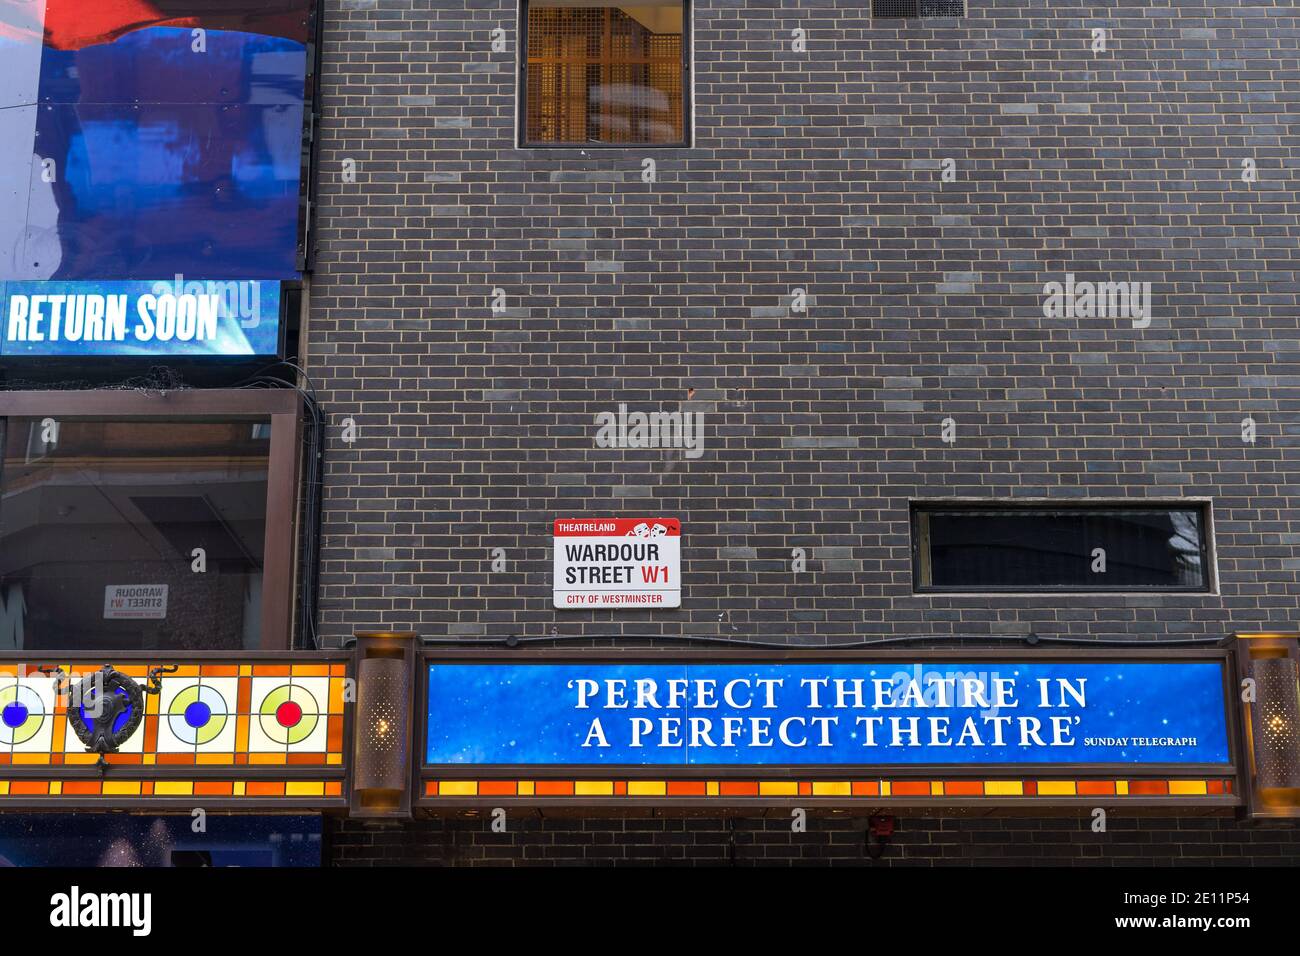 Le mur de briques latéral du théâtre Sondheim sur la rue Wardour avec publicité pour les Miserables musical. Londres Banque D'Images